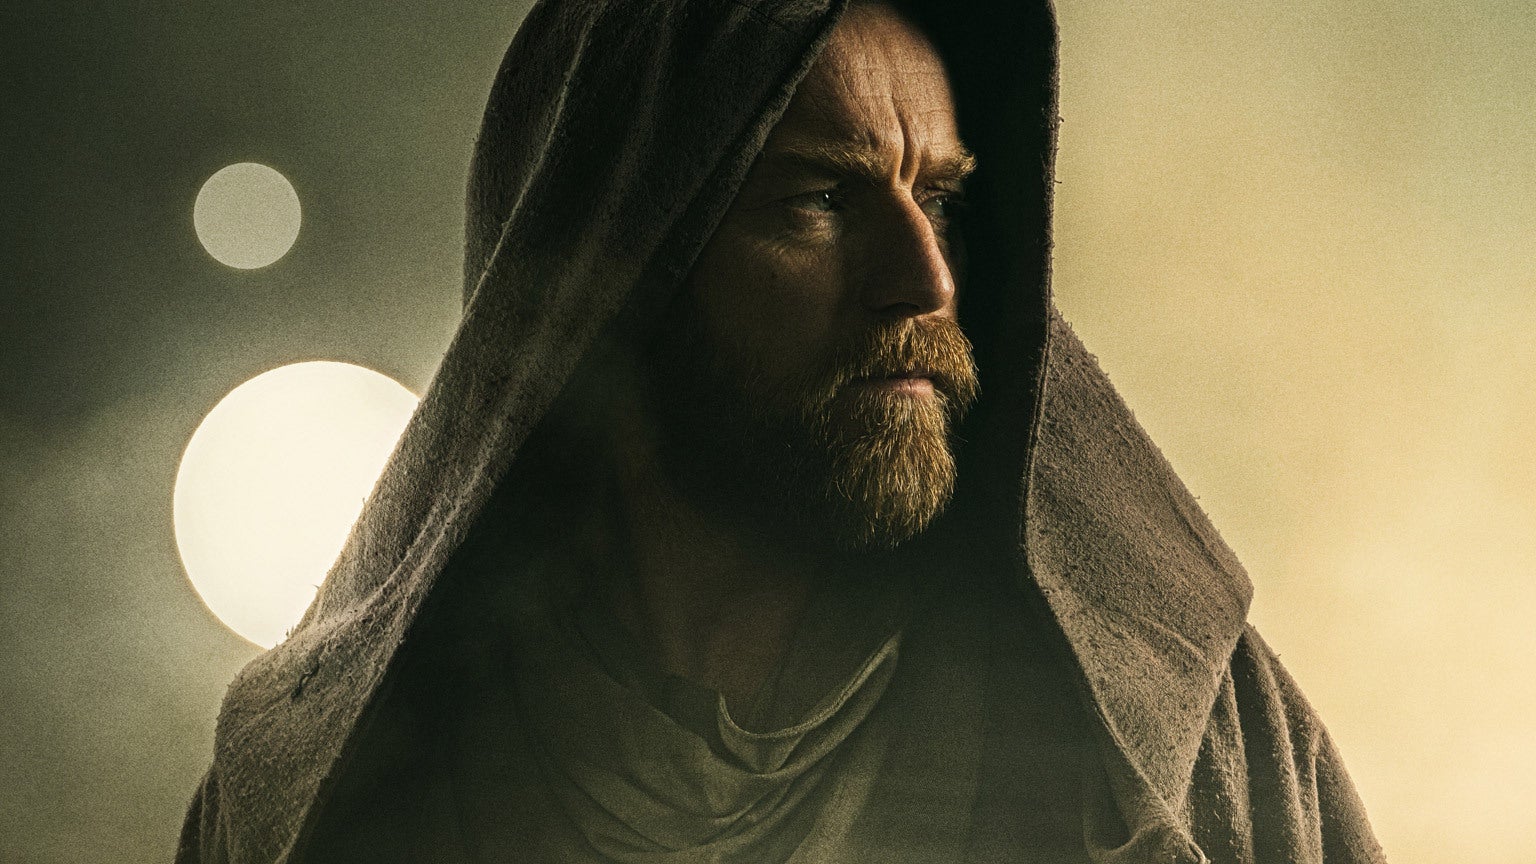 Cropped poster image from Obi Wan Kenobi